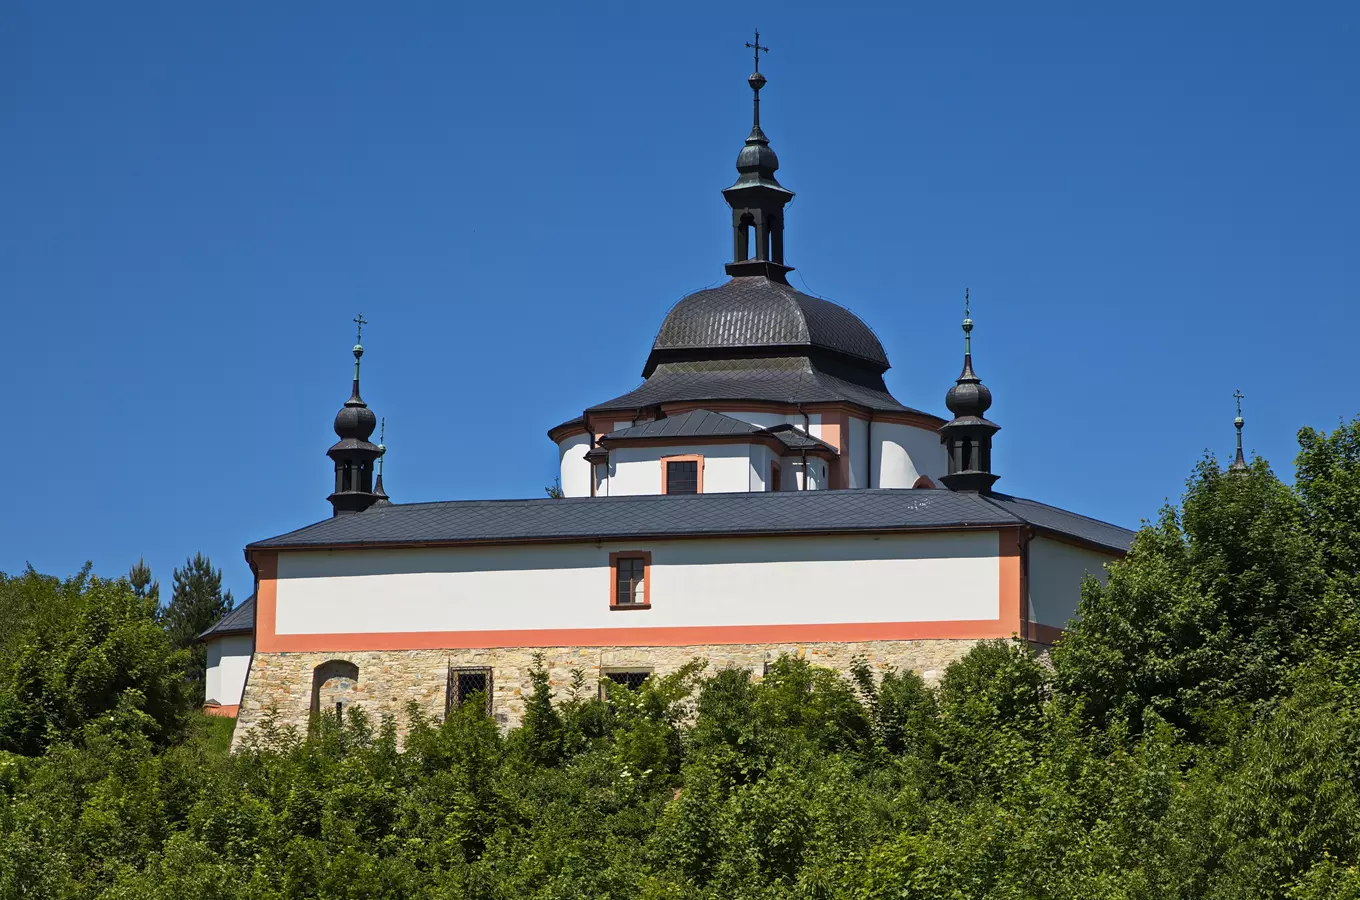 Kaple sv. Jana Nepomuckého v Letohradu